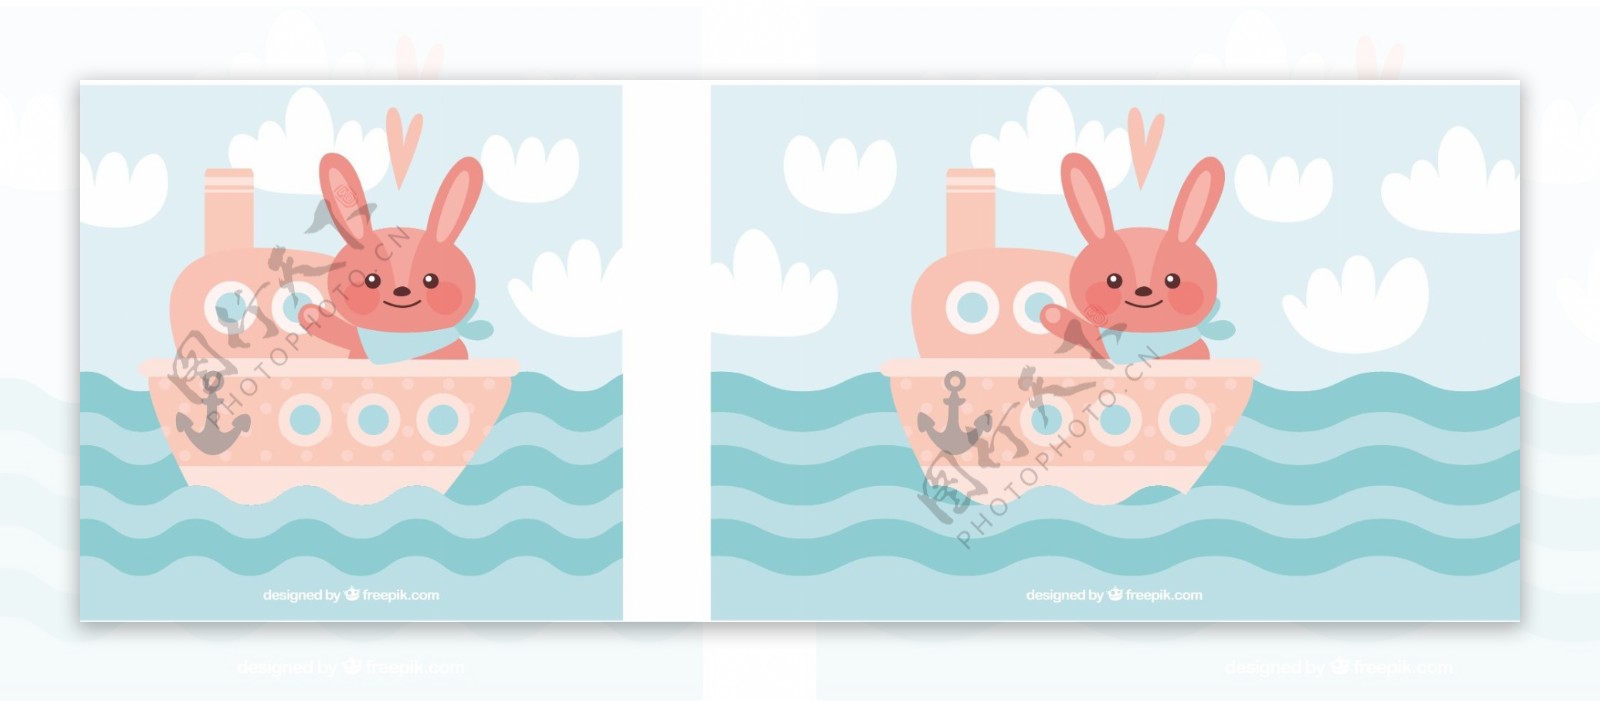 可爱的粉红色船与兔子的背景